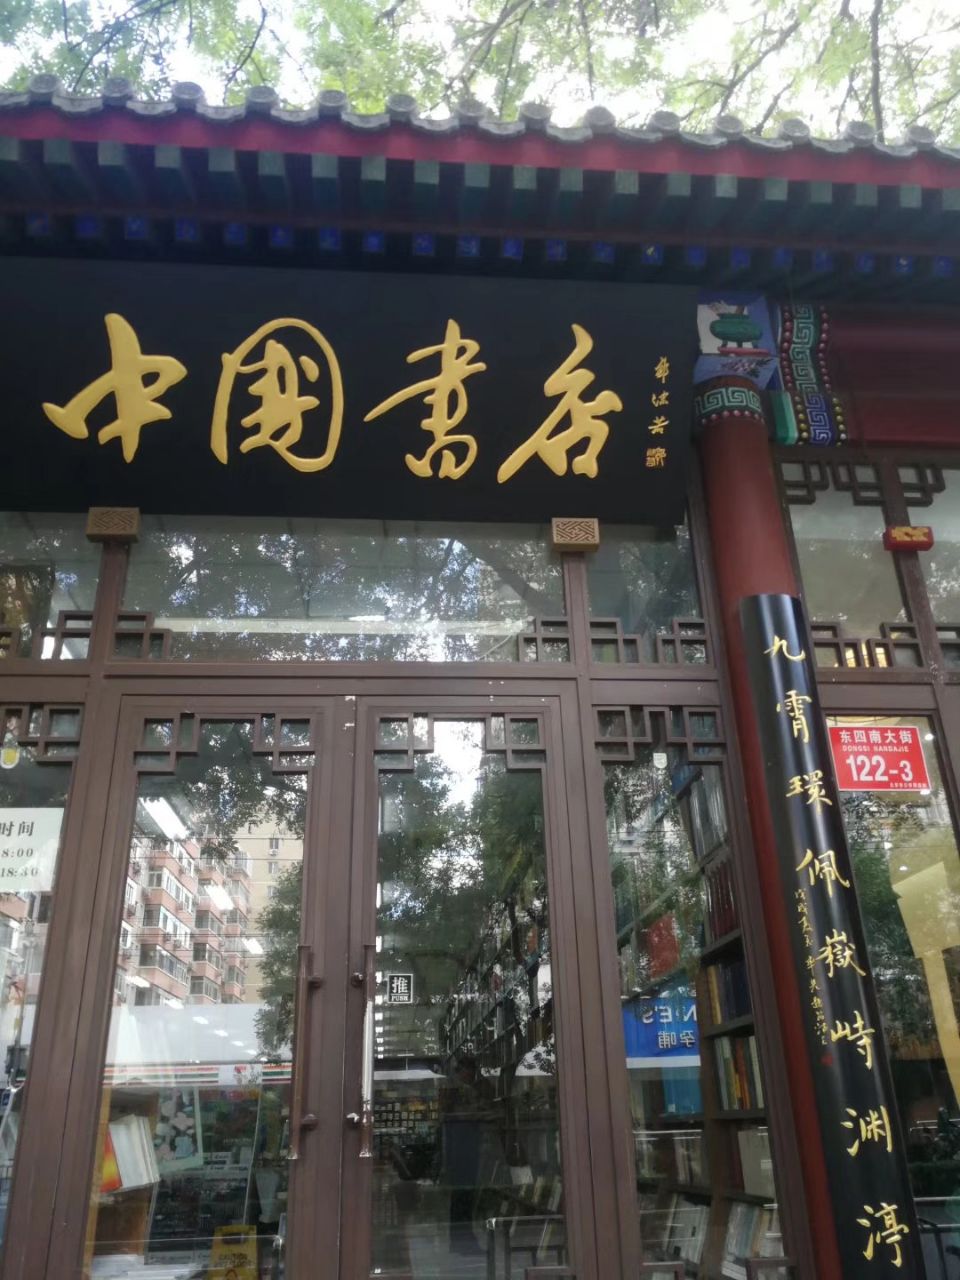 北京书店门面照片图片